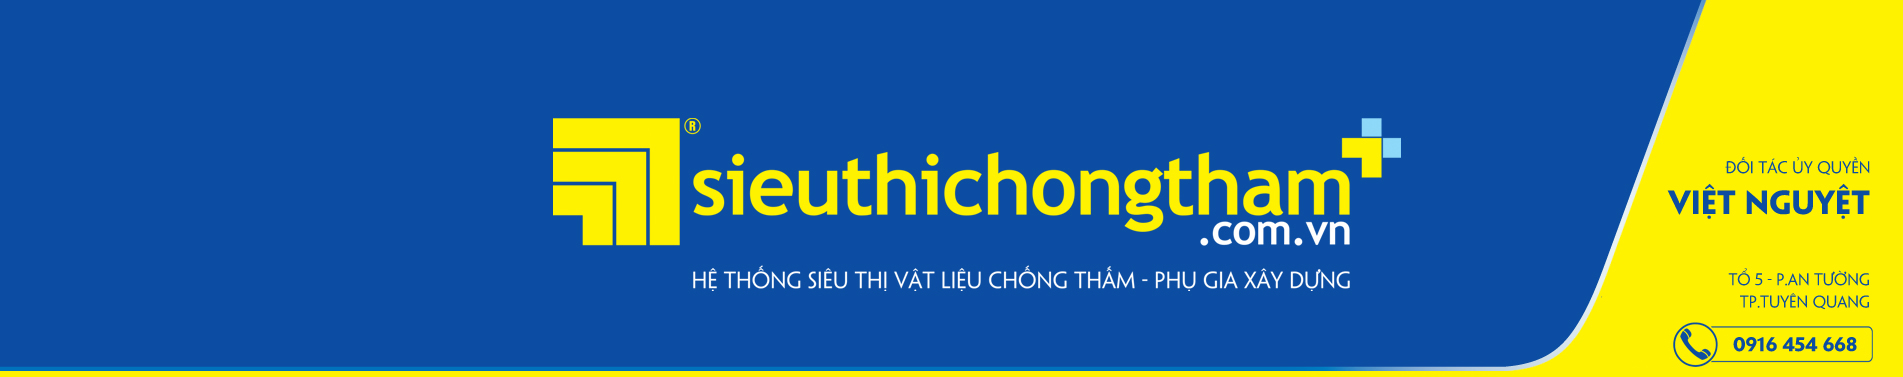 Viet Nguyet Banner